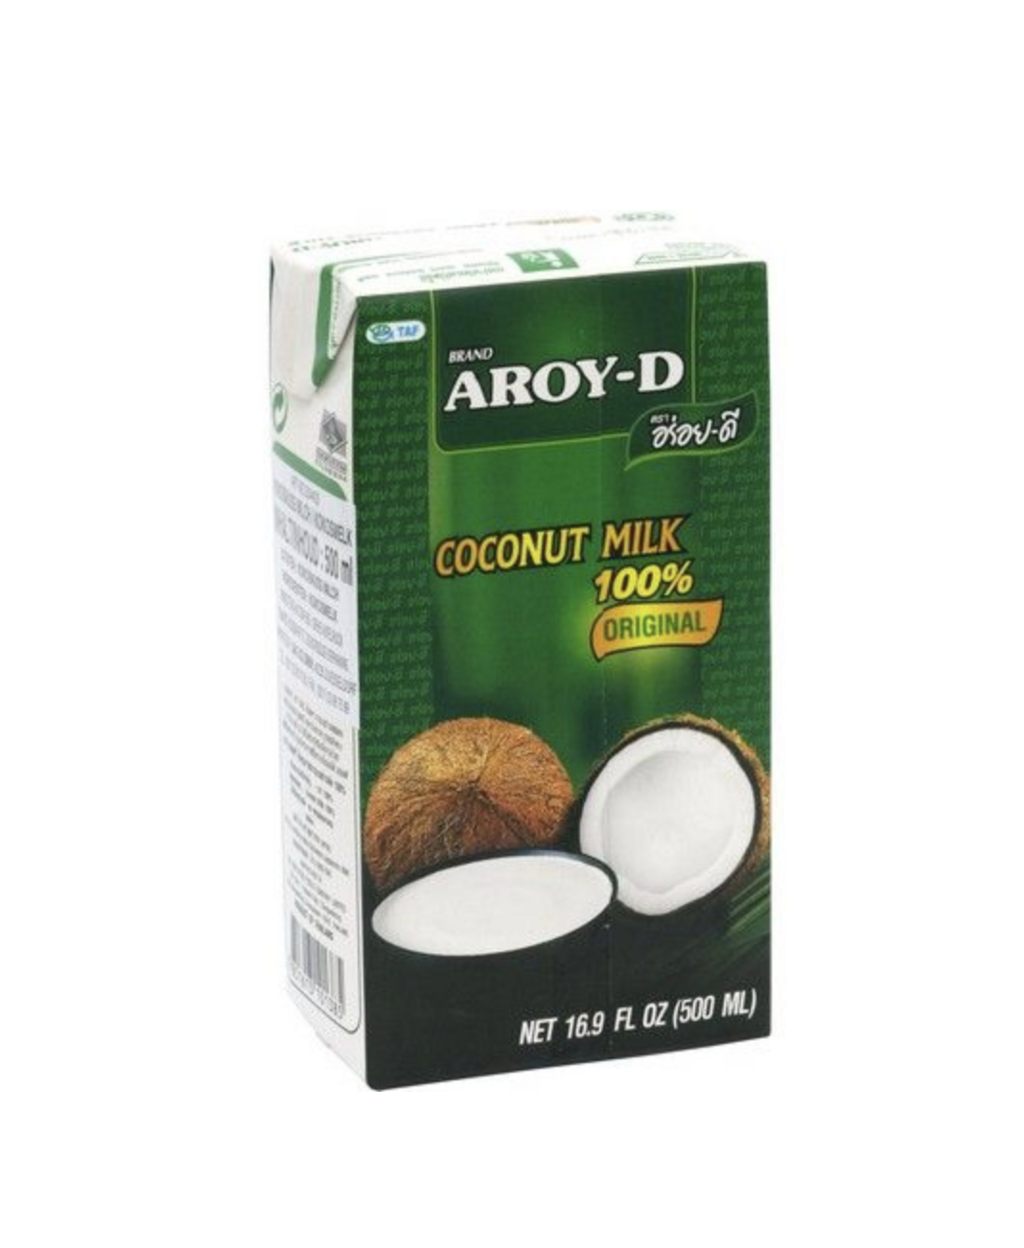 Coconut Milk UHT 17.5% 500ml Aroy-D Thailand